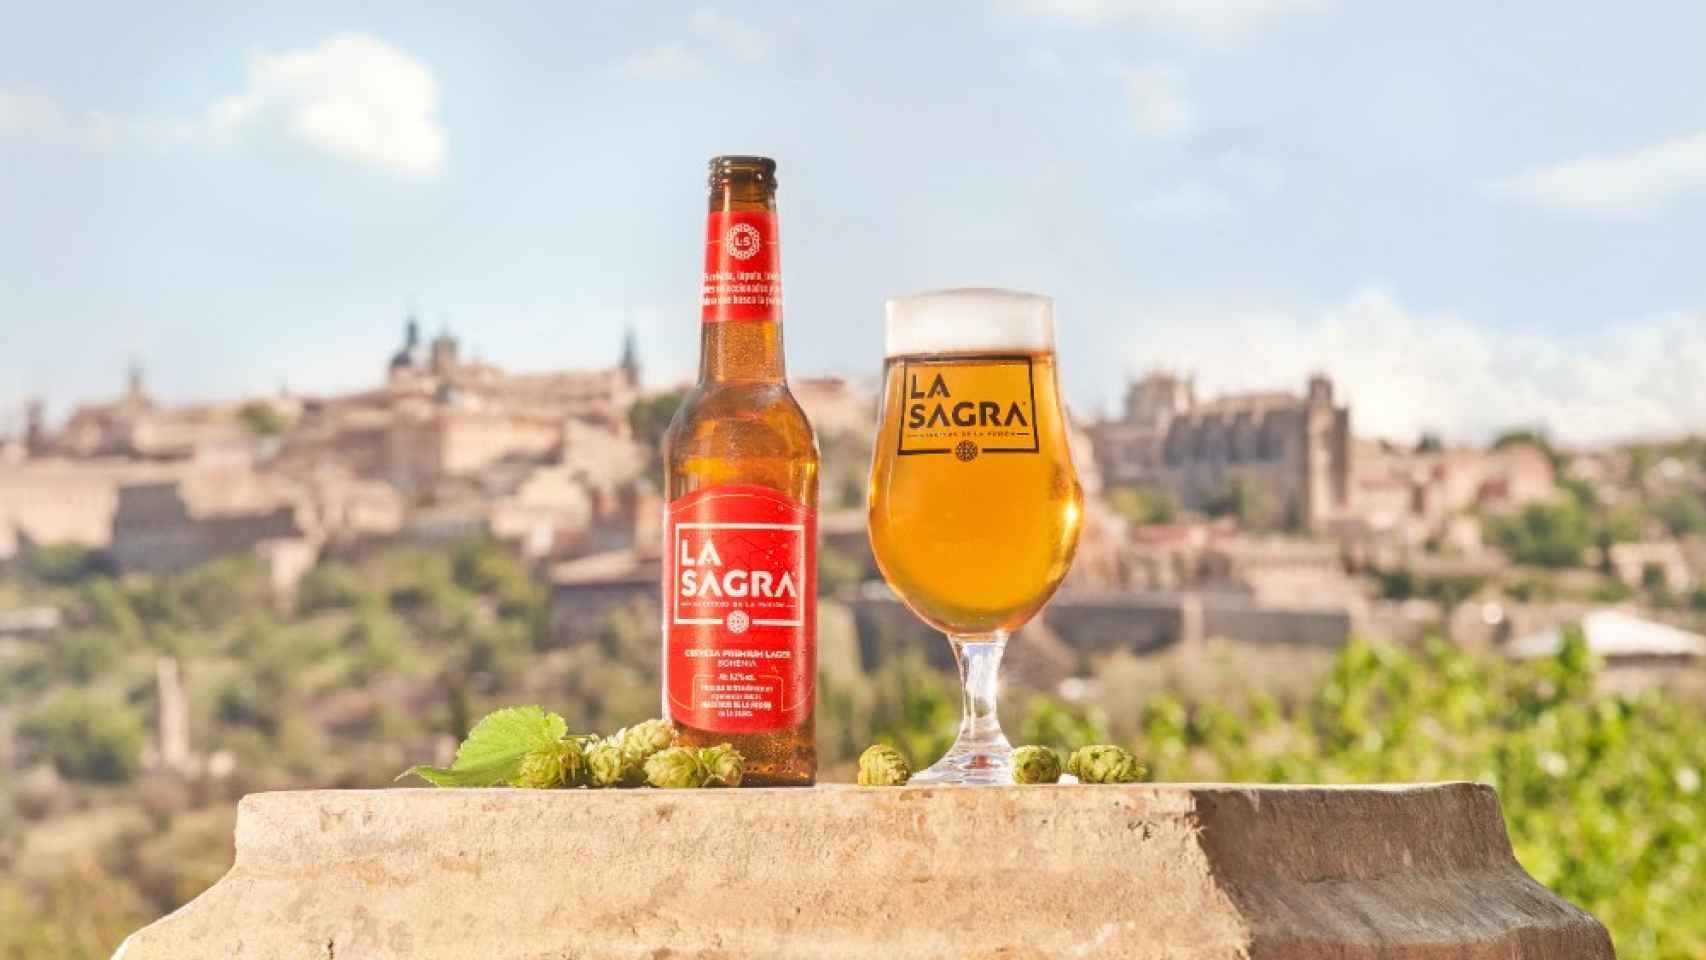 Una imagen promocional de cervezas La Sagra, con Toledo al fondo.